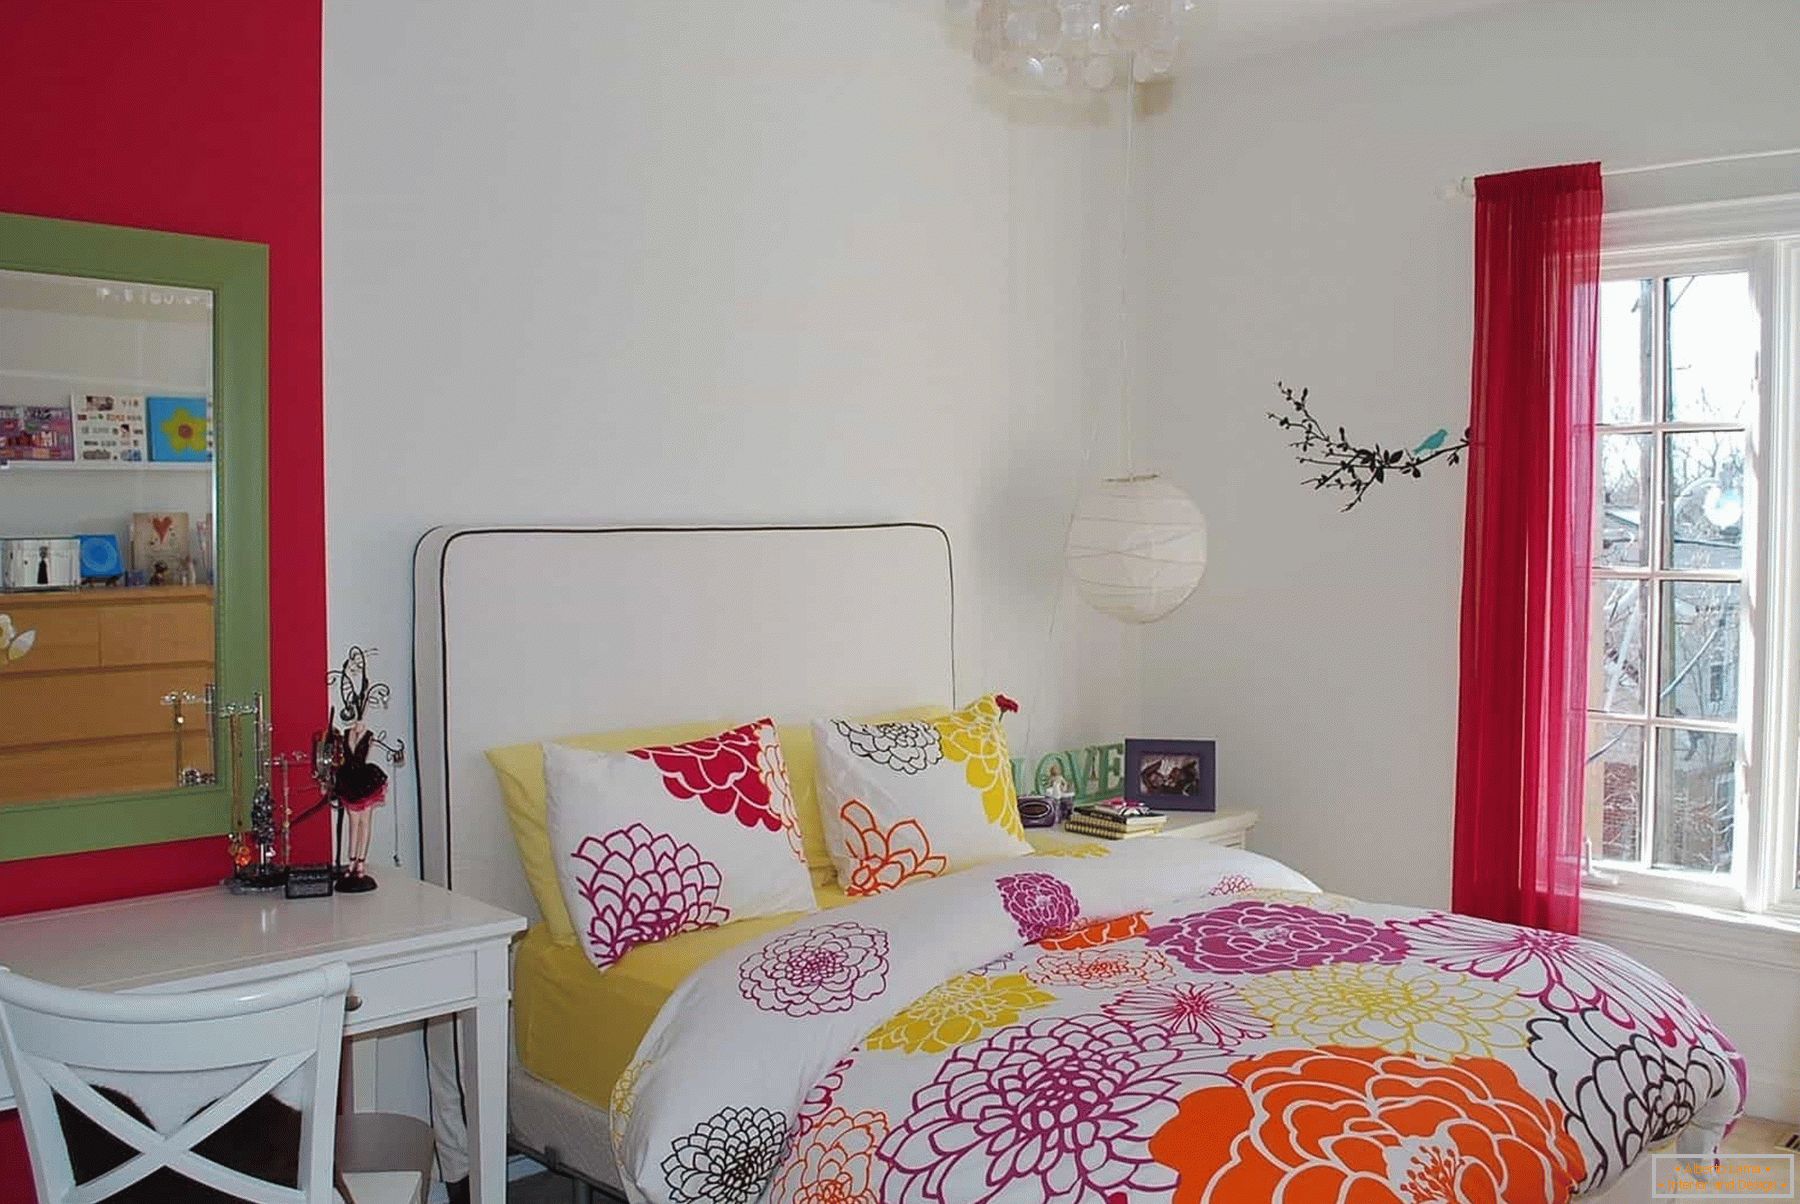 V bielej miestnosti dospievajúcej dievčiny - farebné postele a prvky dekorácie